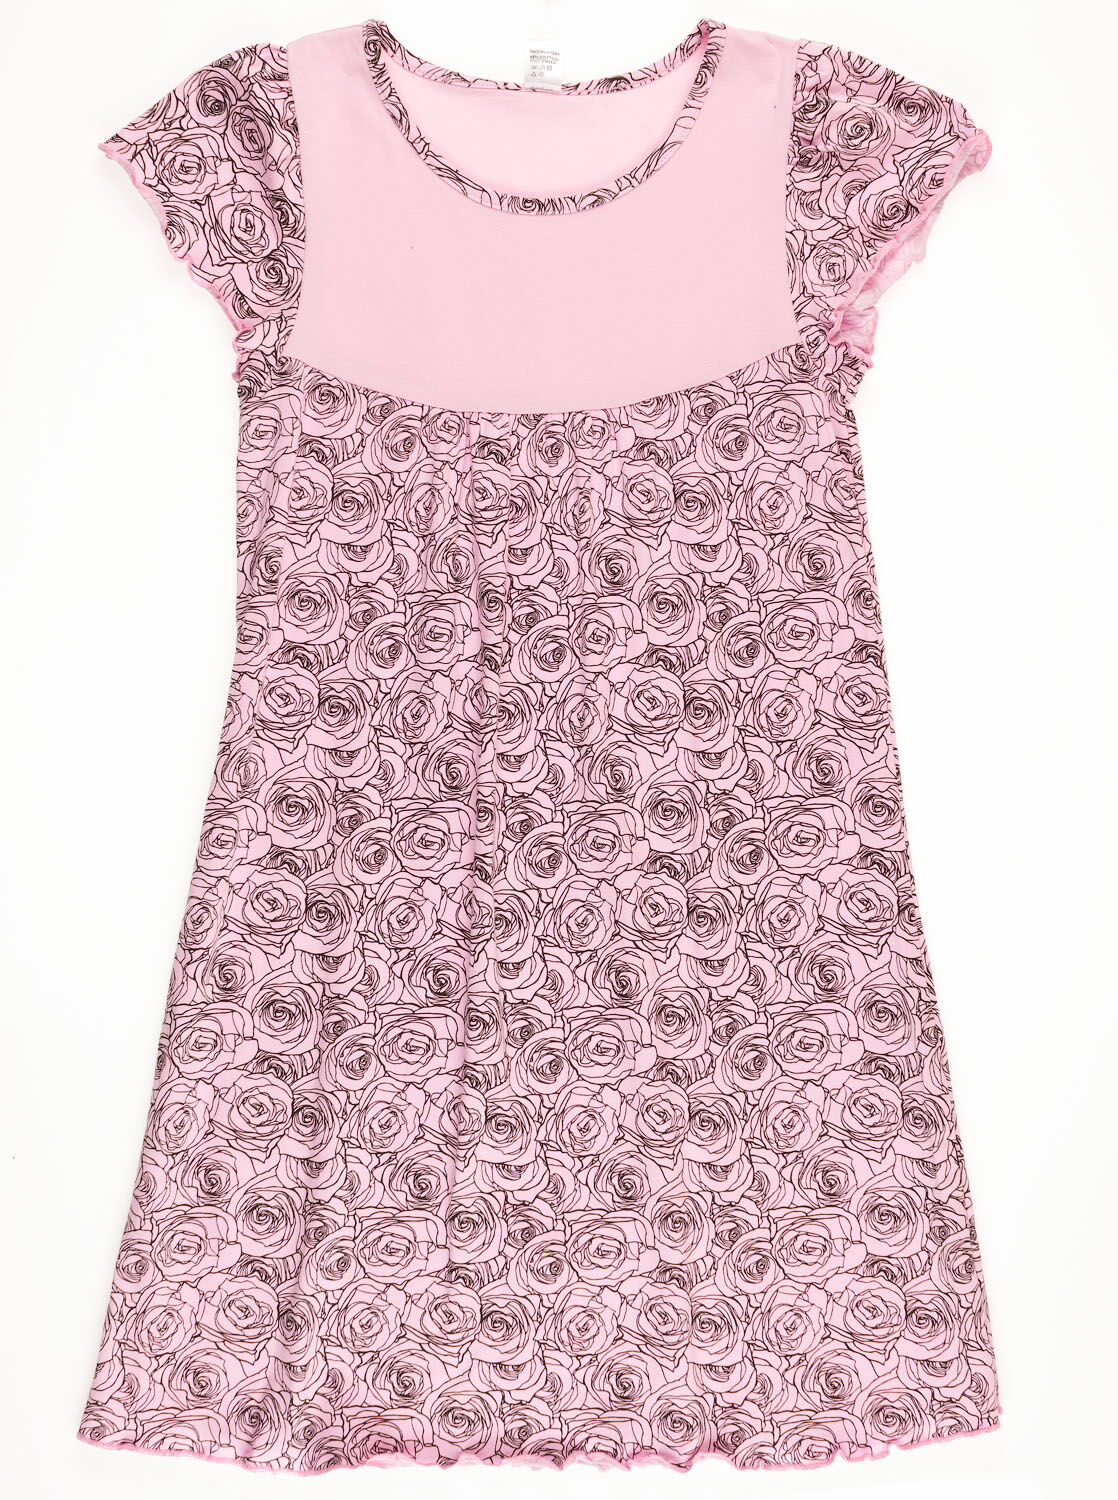 Сорочка ночная с коротким рукавом для девочки Valeri tex Розы розовая - цена